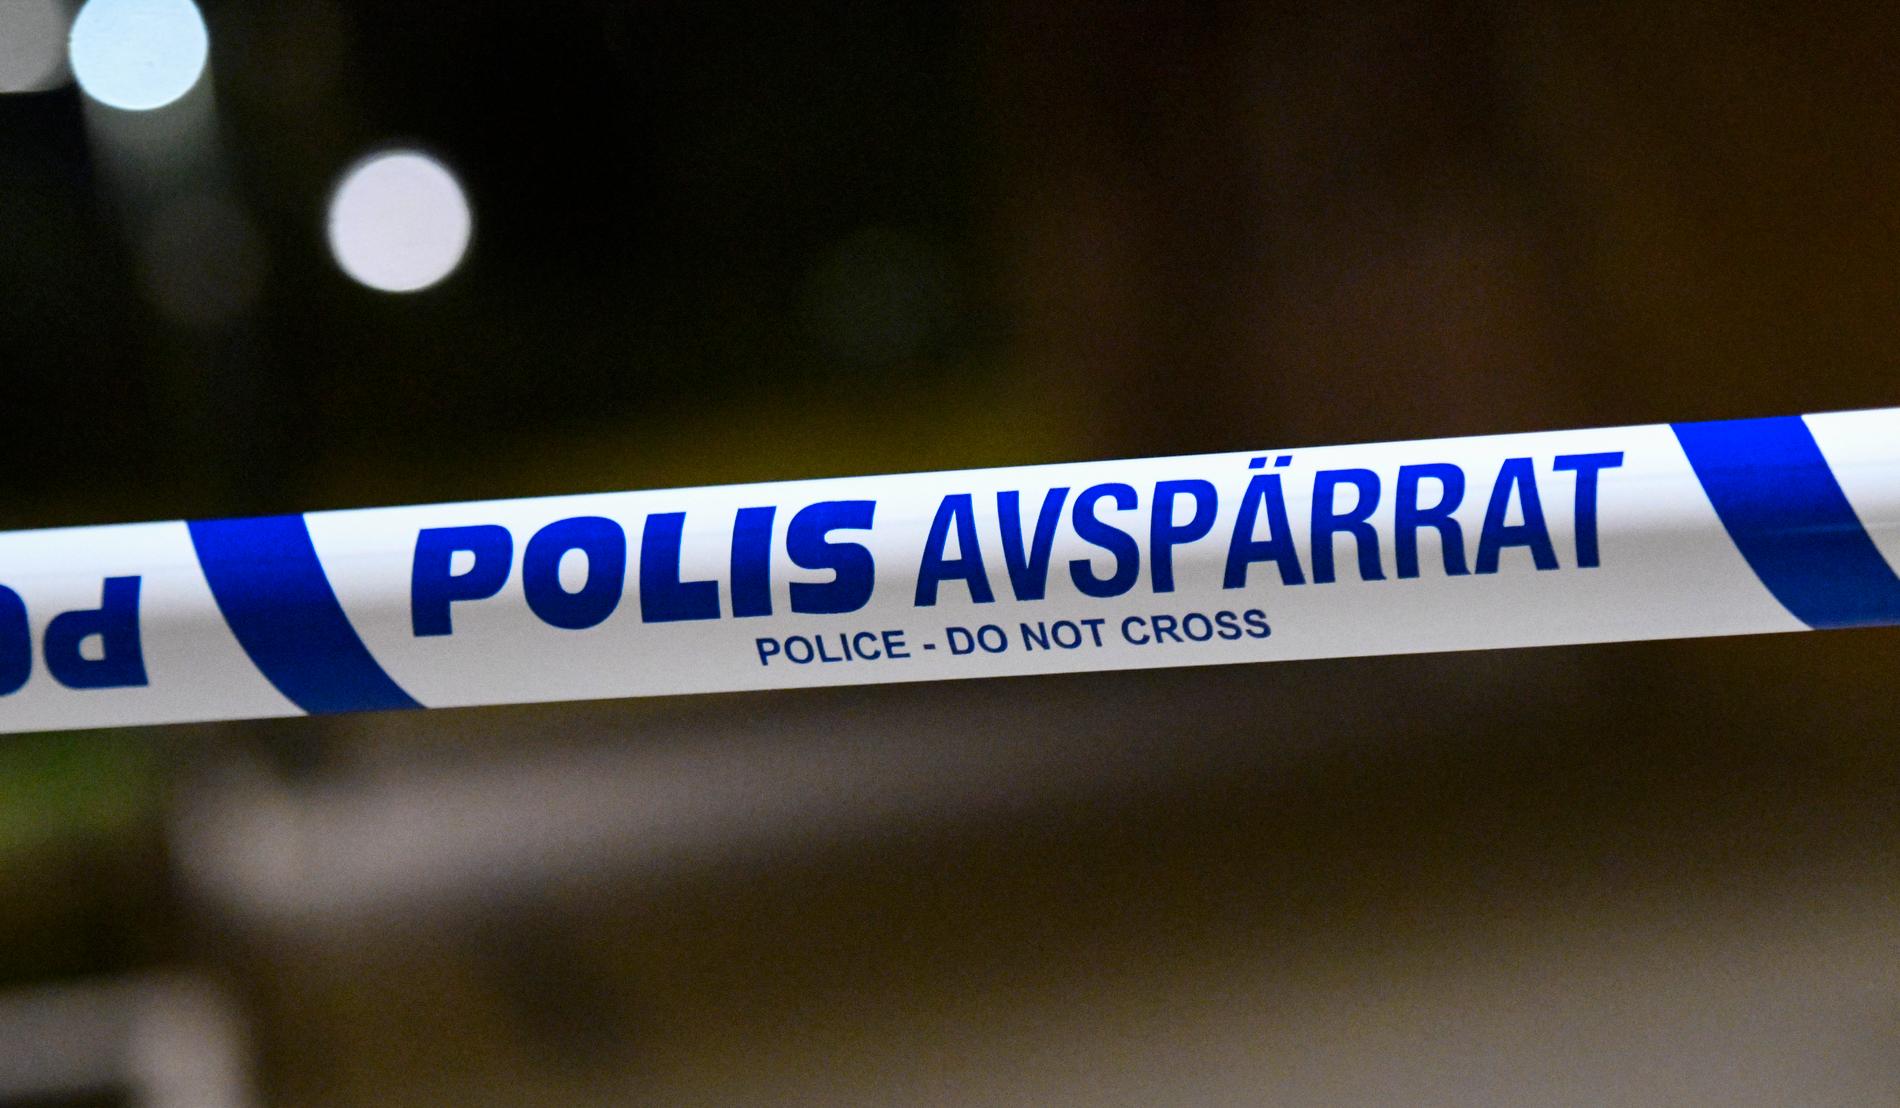 En lägenhet i Uppsala blev beskjuten. Arkivbild.